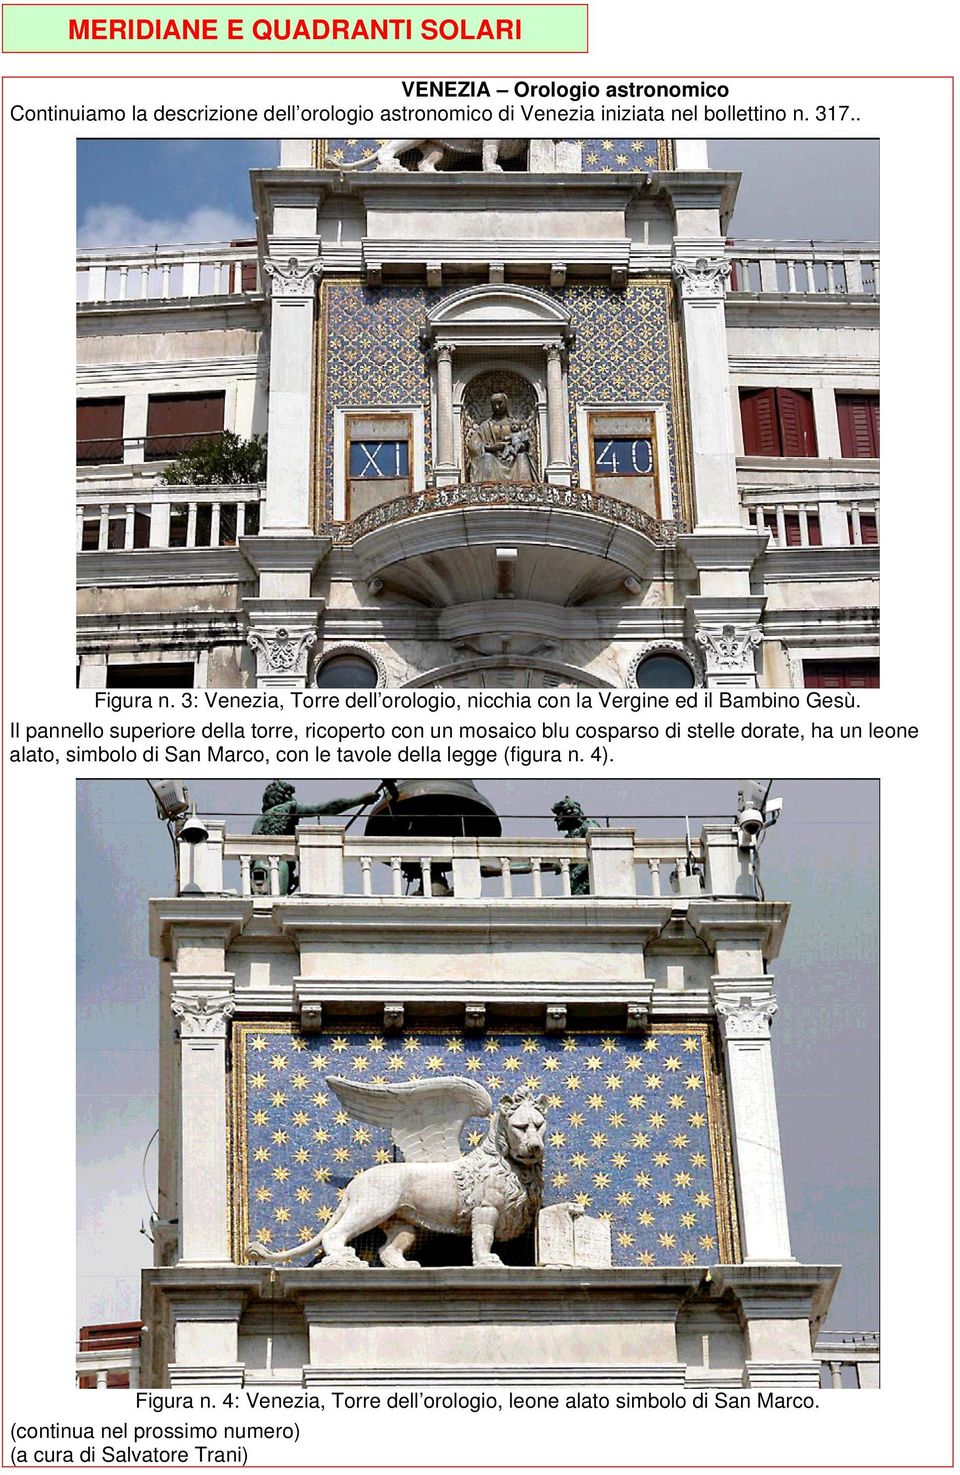 Il pannello superiore della torre, ricoperto con un mosaico blu cosparso di stelle dorate, ha un leone alato, simbolo di San Marco, con